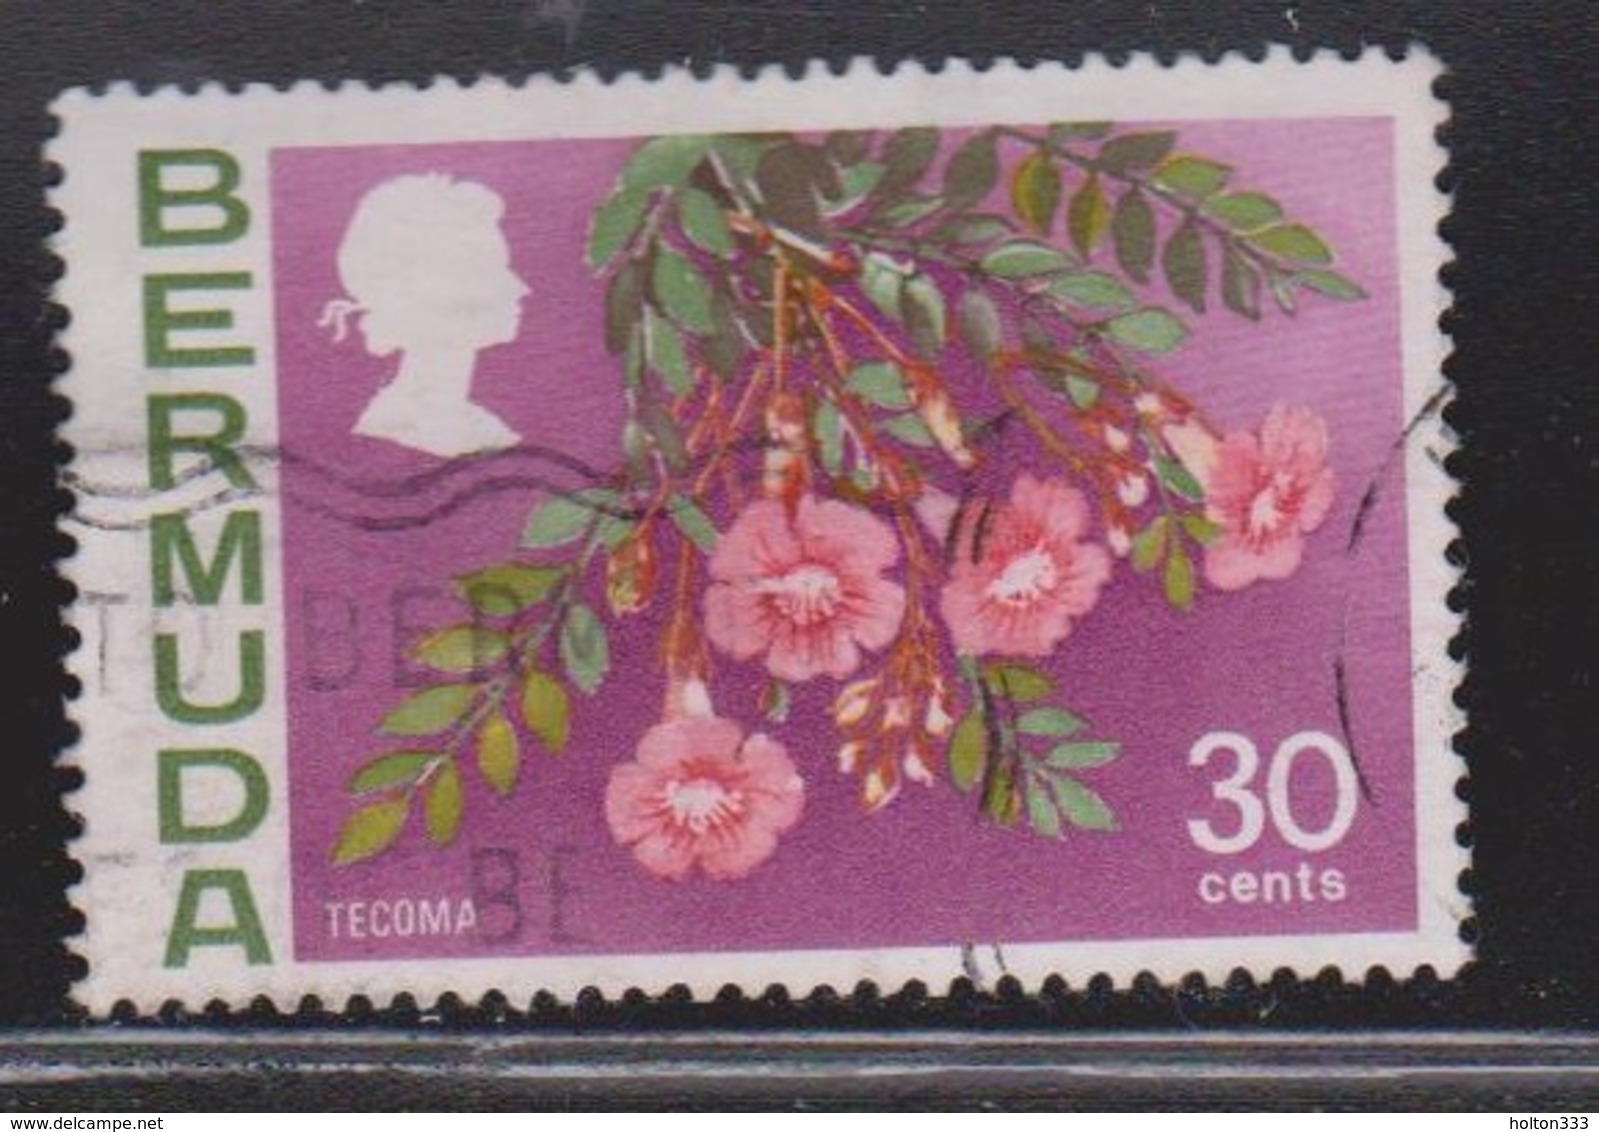 BERMUDA Scott # 267 Used - Flowers - Bermuda